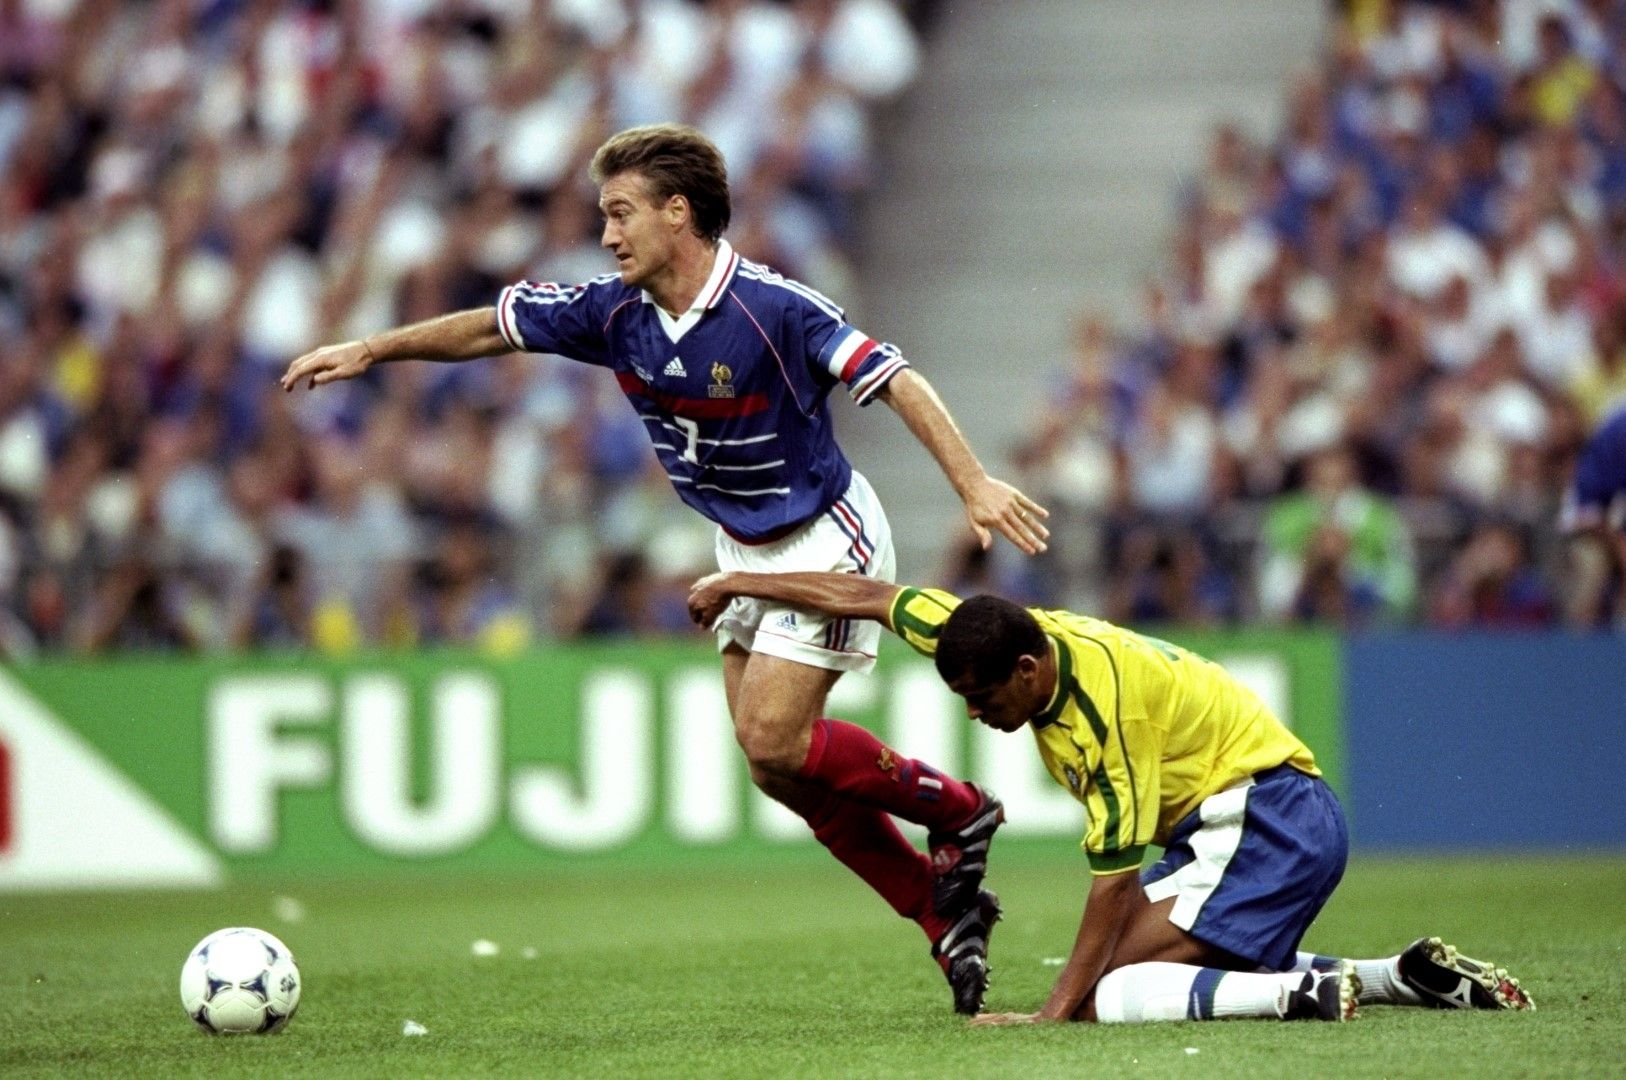 Дидие Дешан, днес селекционер на Франция, подема поредната френска атака във финала - 3:0 за "петлите".